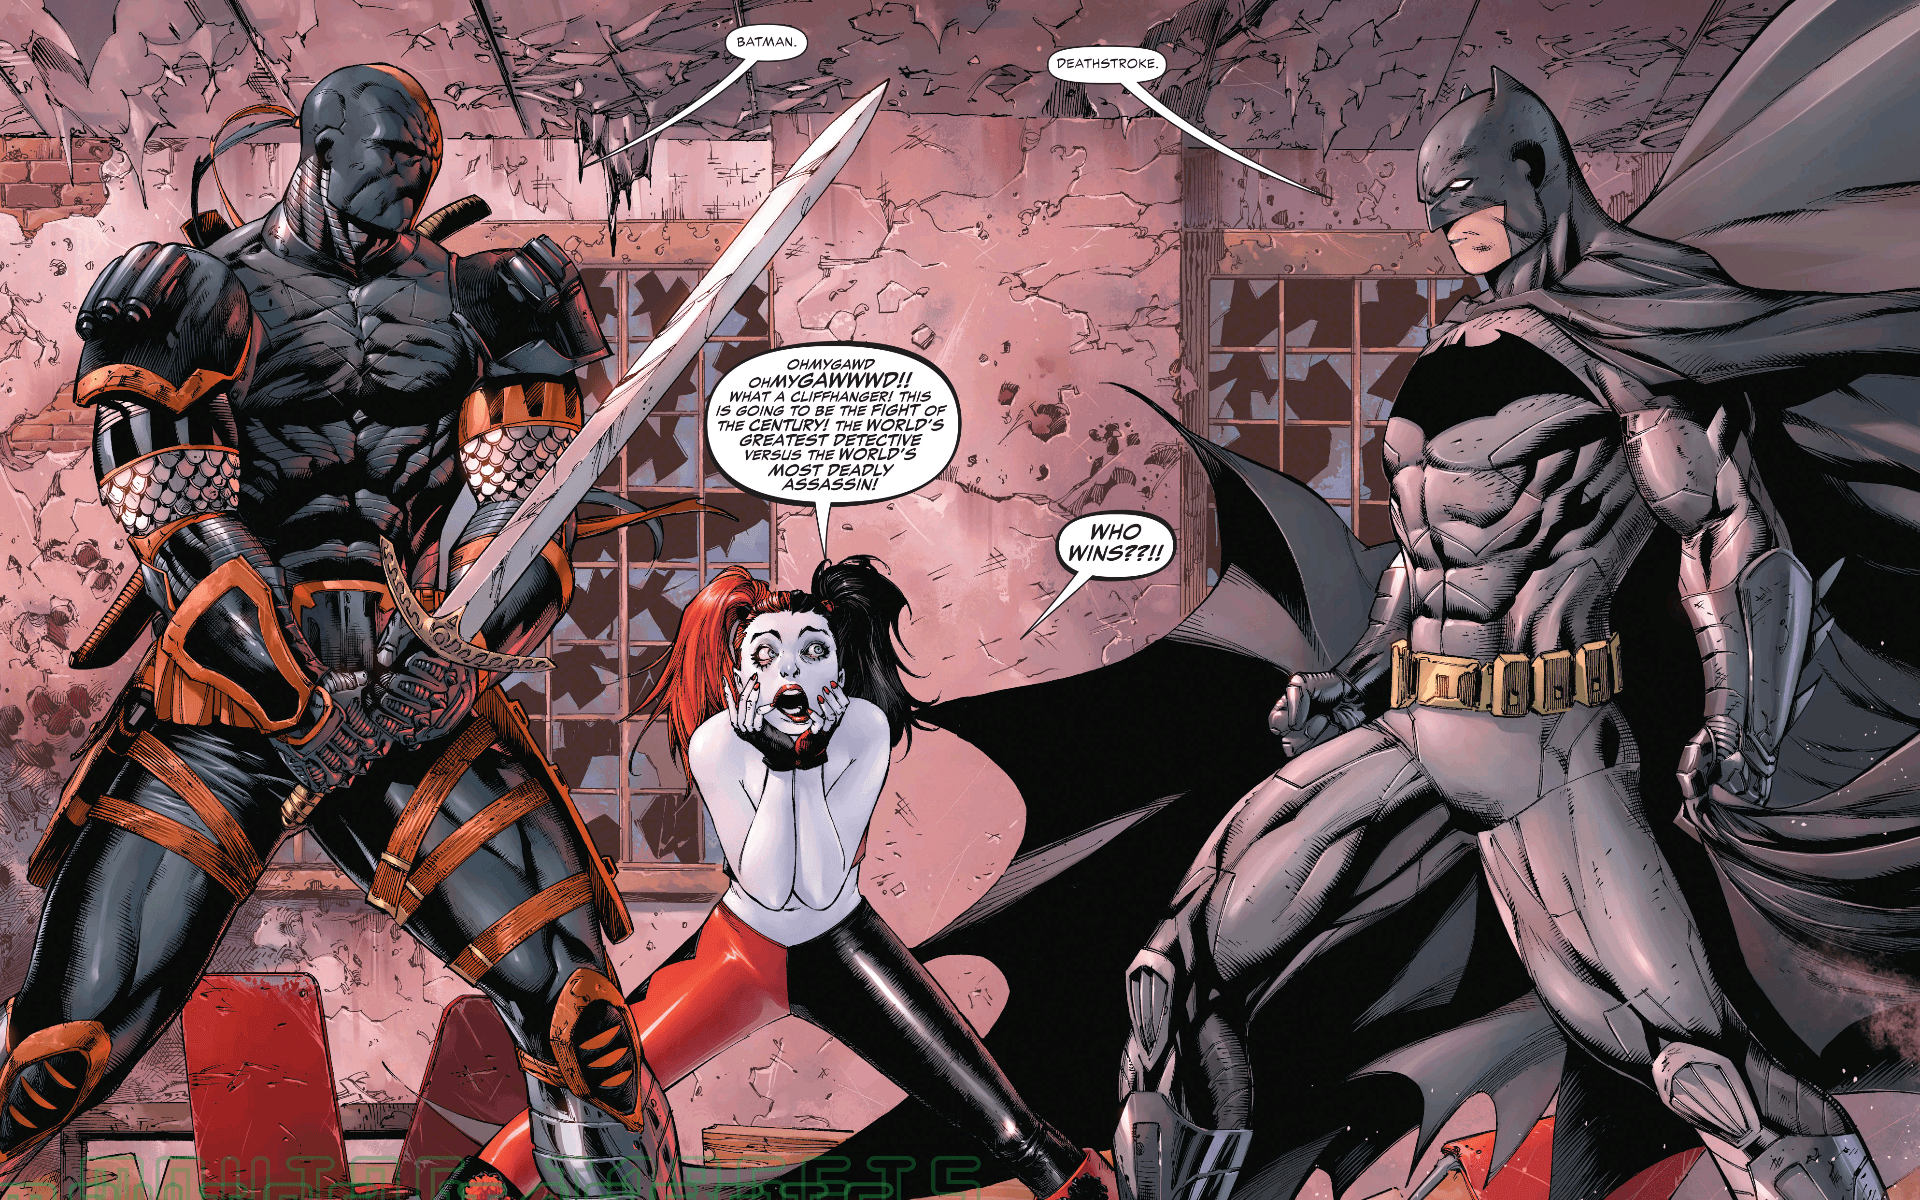 Batman vs Deathstroke 4K Wallpaper #6.400